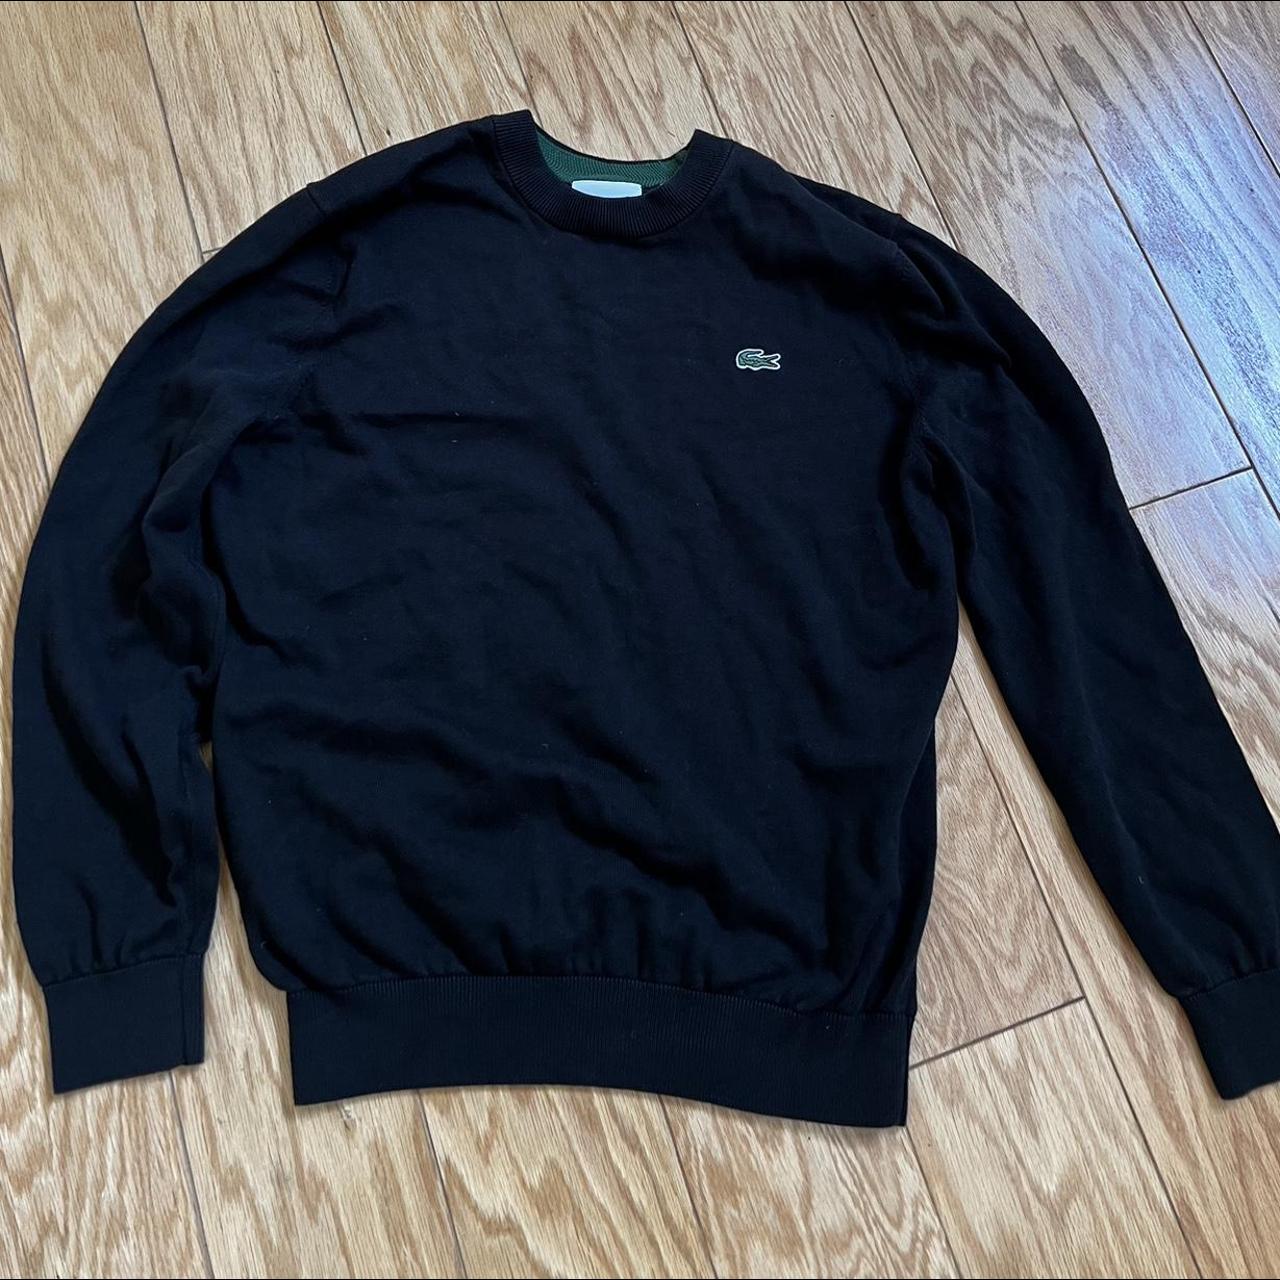 black lacoste sweater tts size L - Depop